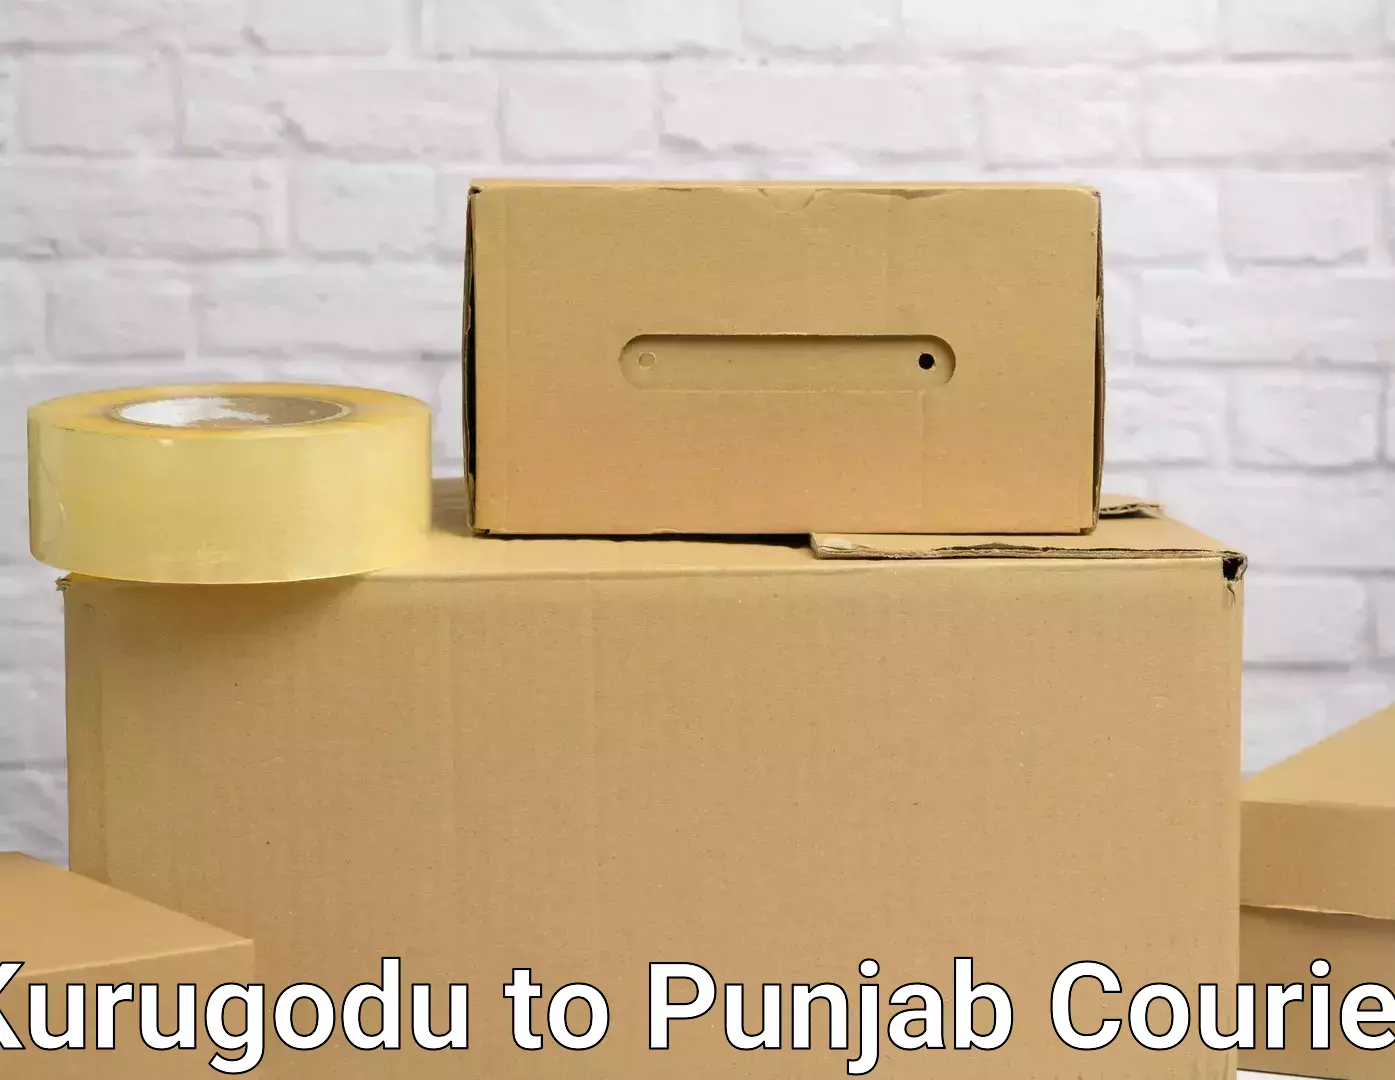 Professional moving company Kurugodu to Punjab